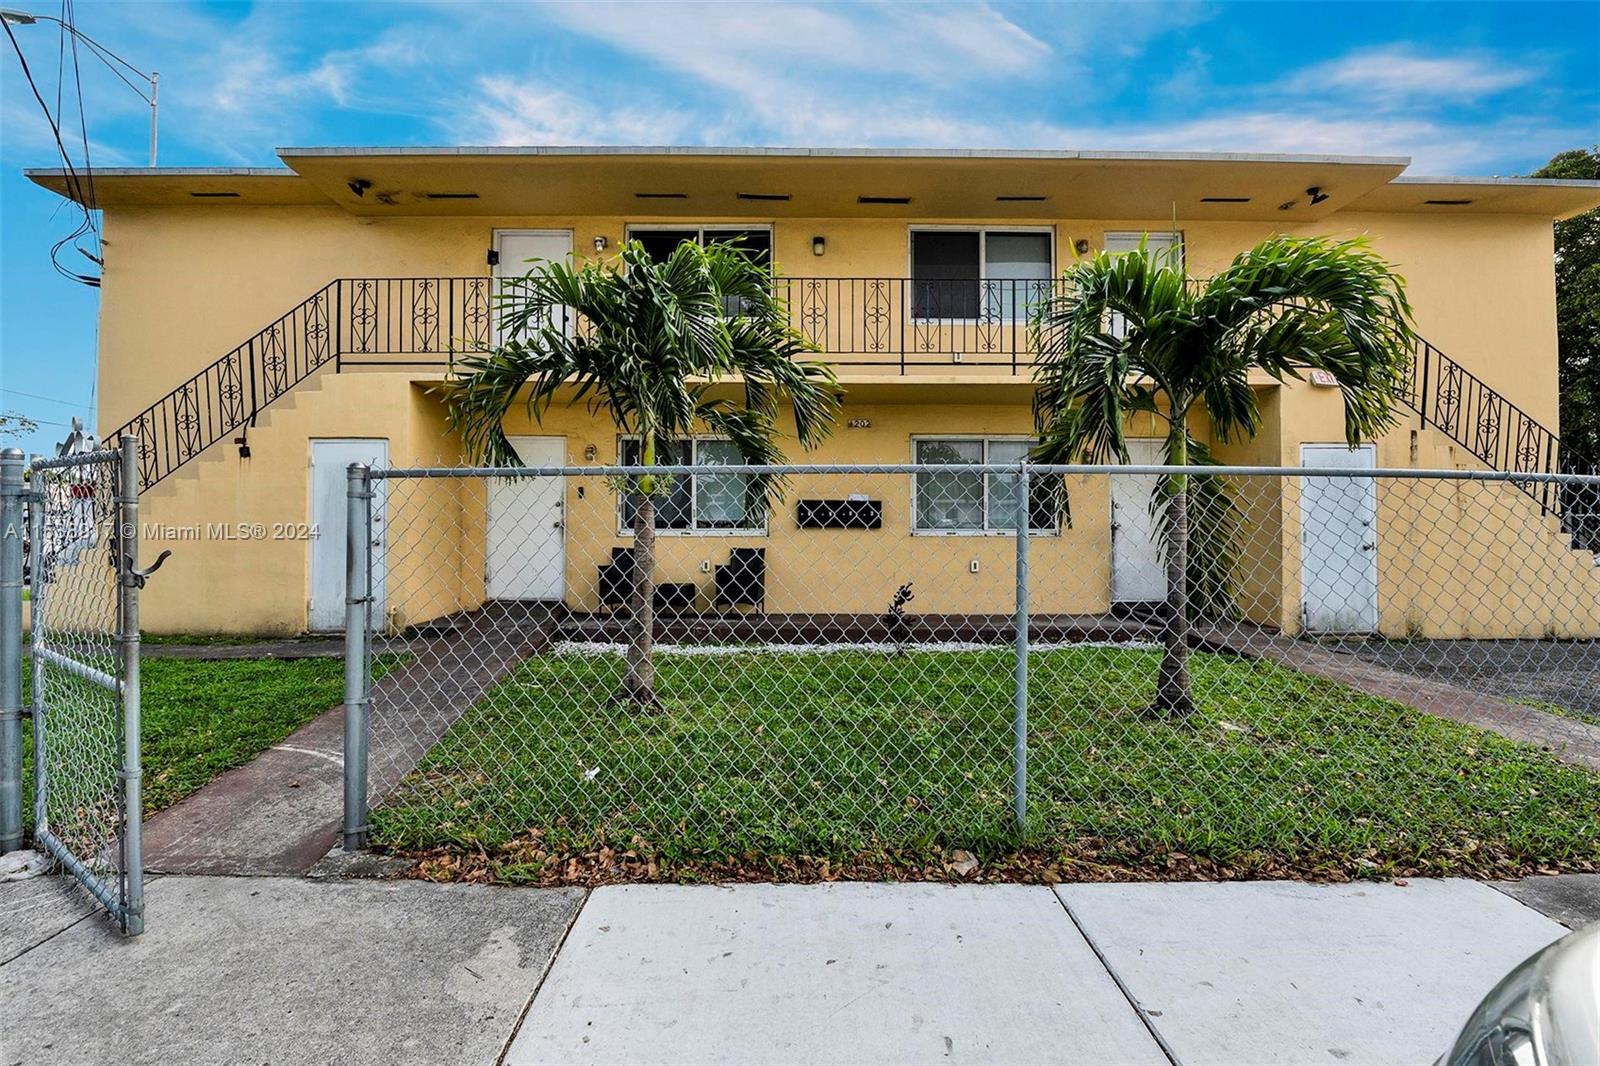 Rental Property at 1202 Nw 61st St St, Miami, Broward County, Florida -  - $775,000 MO.